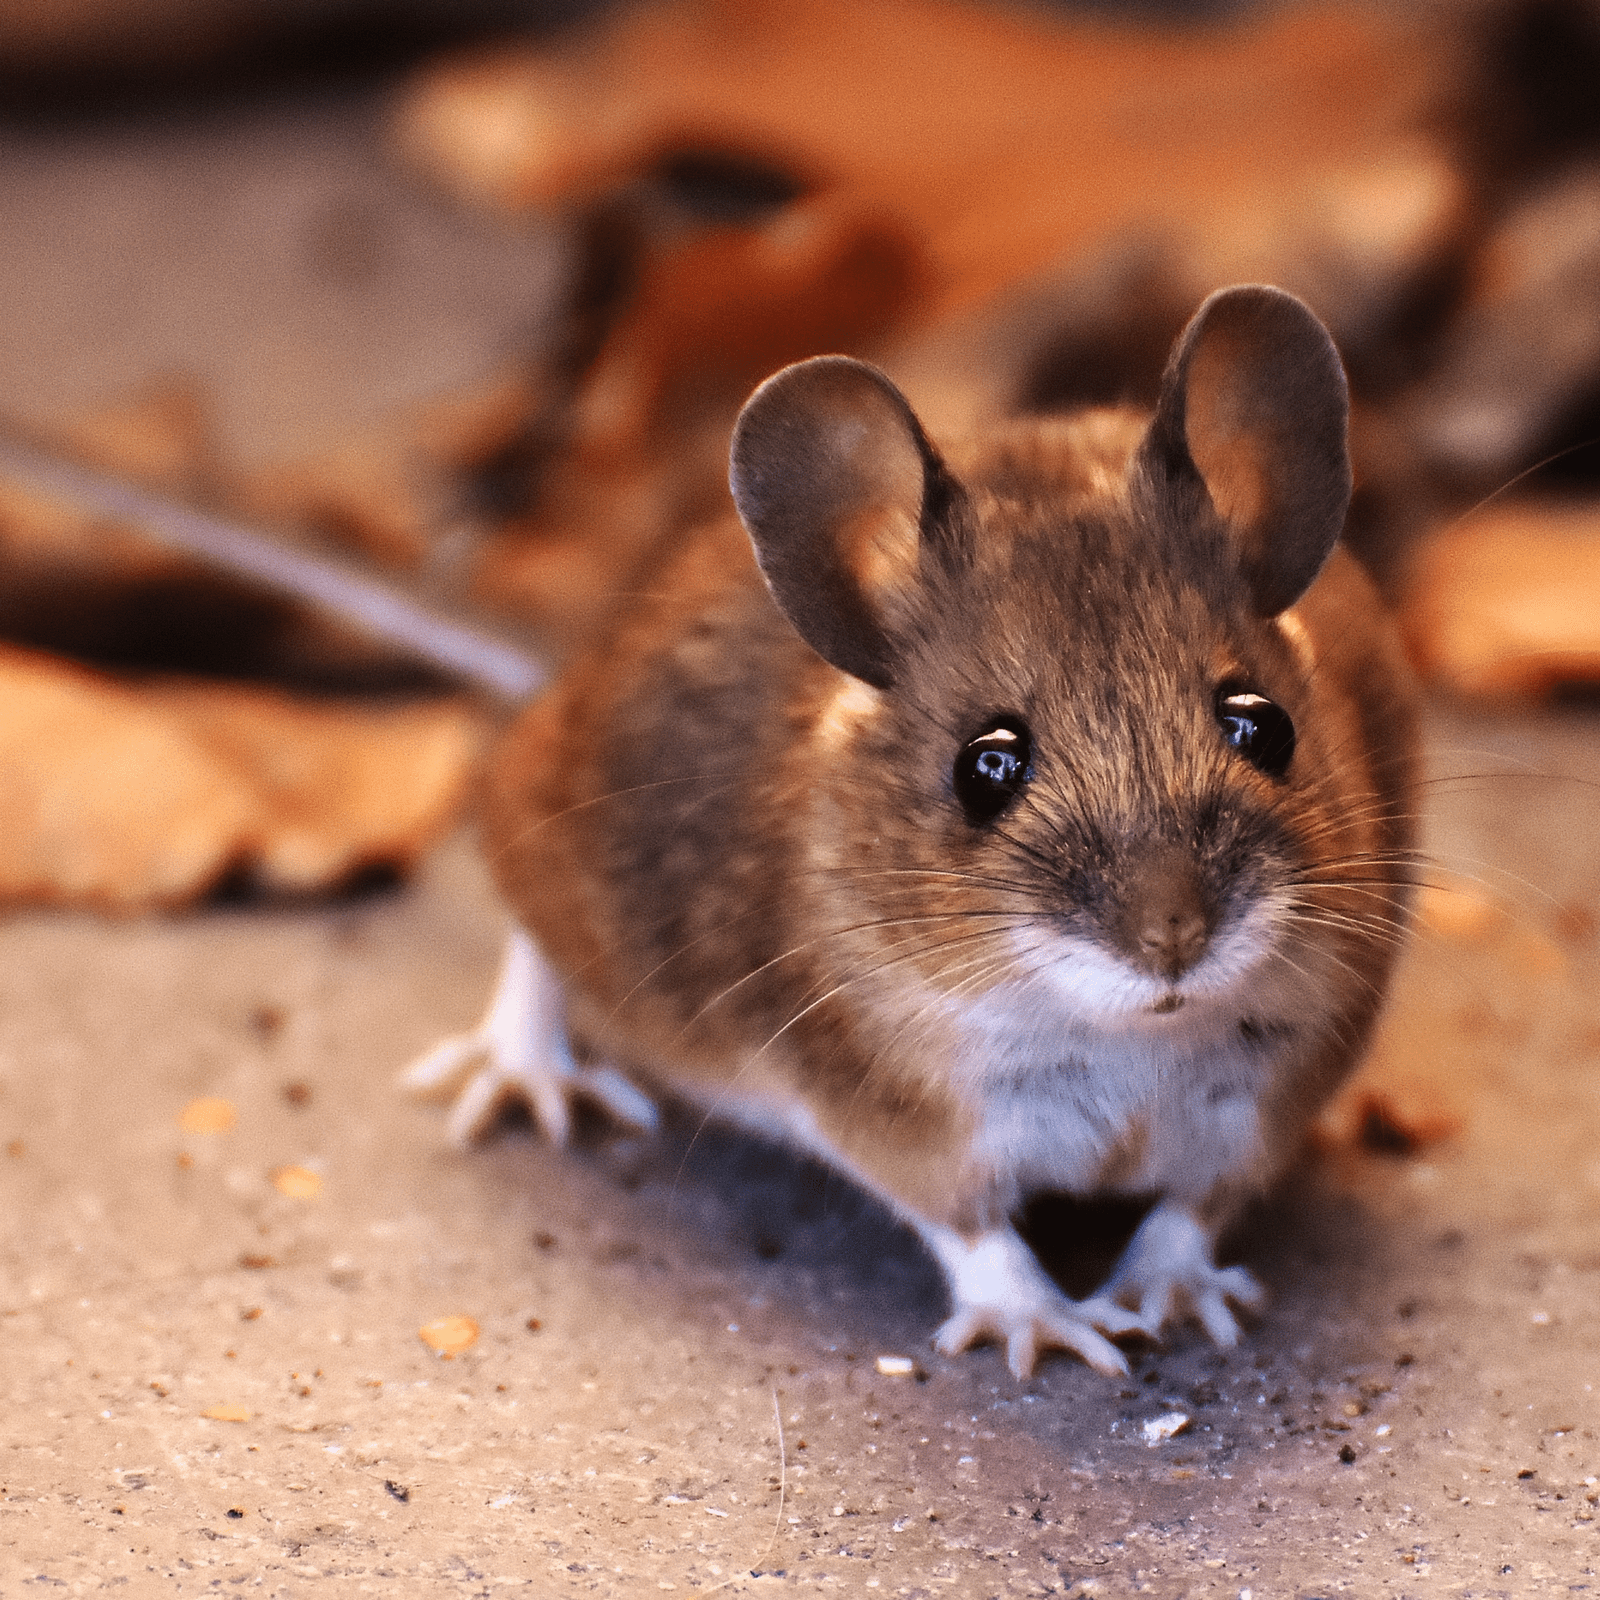 muizenval muizenvallen muizen muizen verjagen veldmuizen muis verjagen muizenverjagen muizen in huis huismuis muizenvergif huismuizen muis bestrijding muizen soorten muizen in plafond muizen in spouwmuur muizen op zolder muizenplaag muizen verdelgen verdwaalde muis in huis